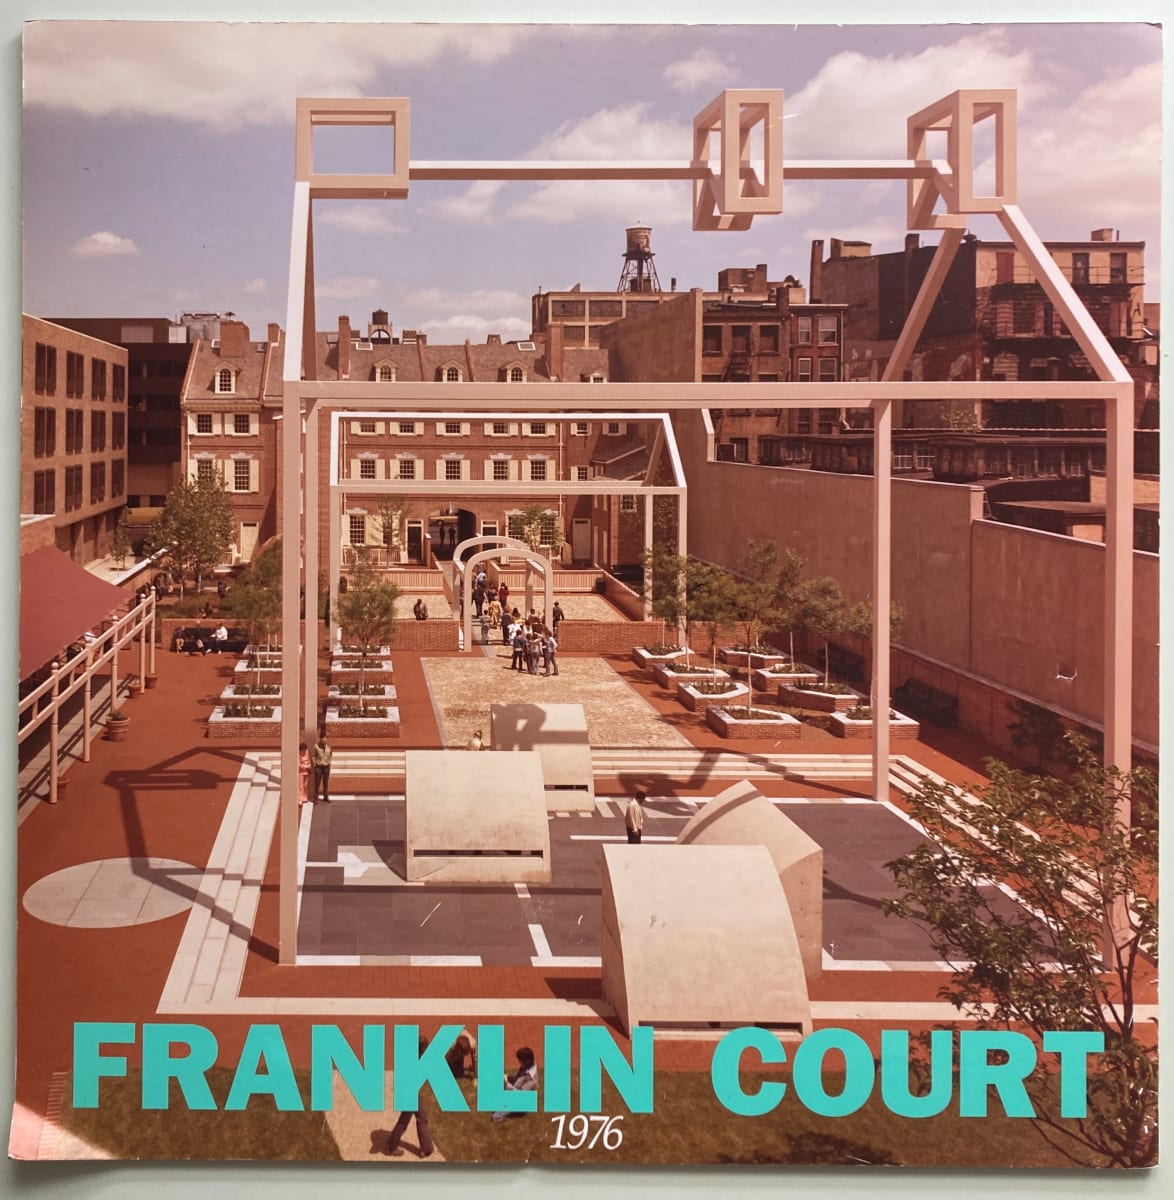 Franklin Court 1976 by Denise Scott Brown, Robert Venturi 